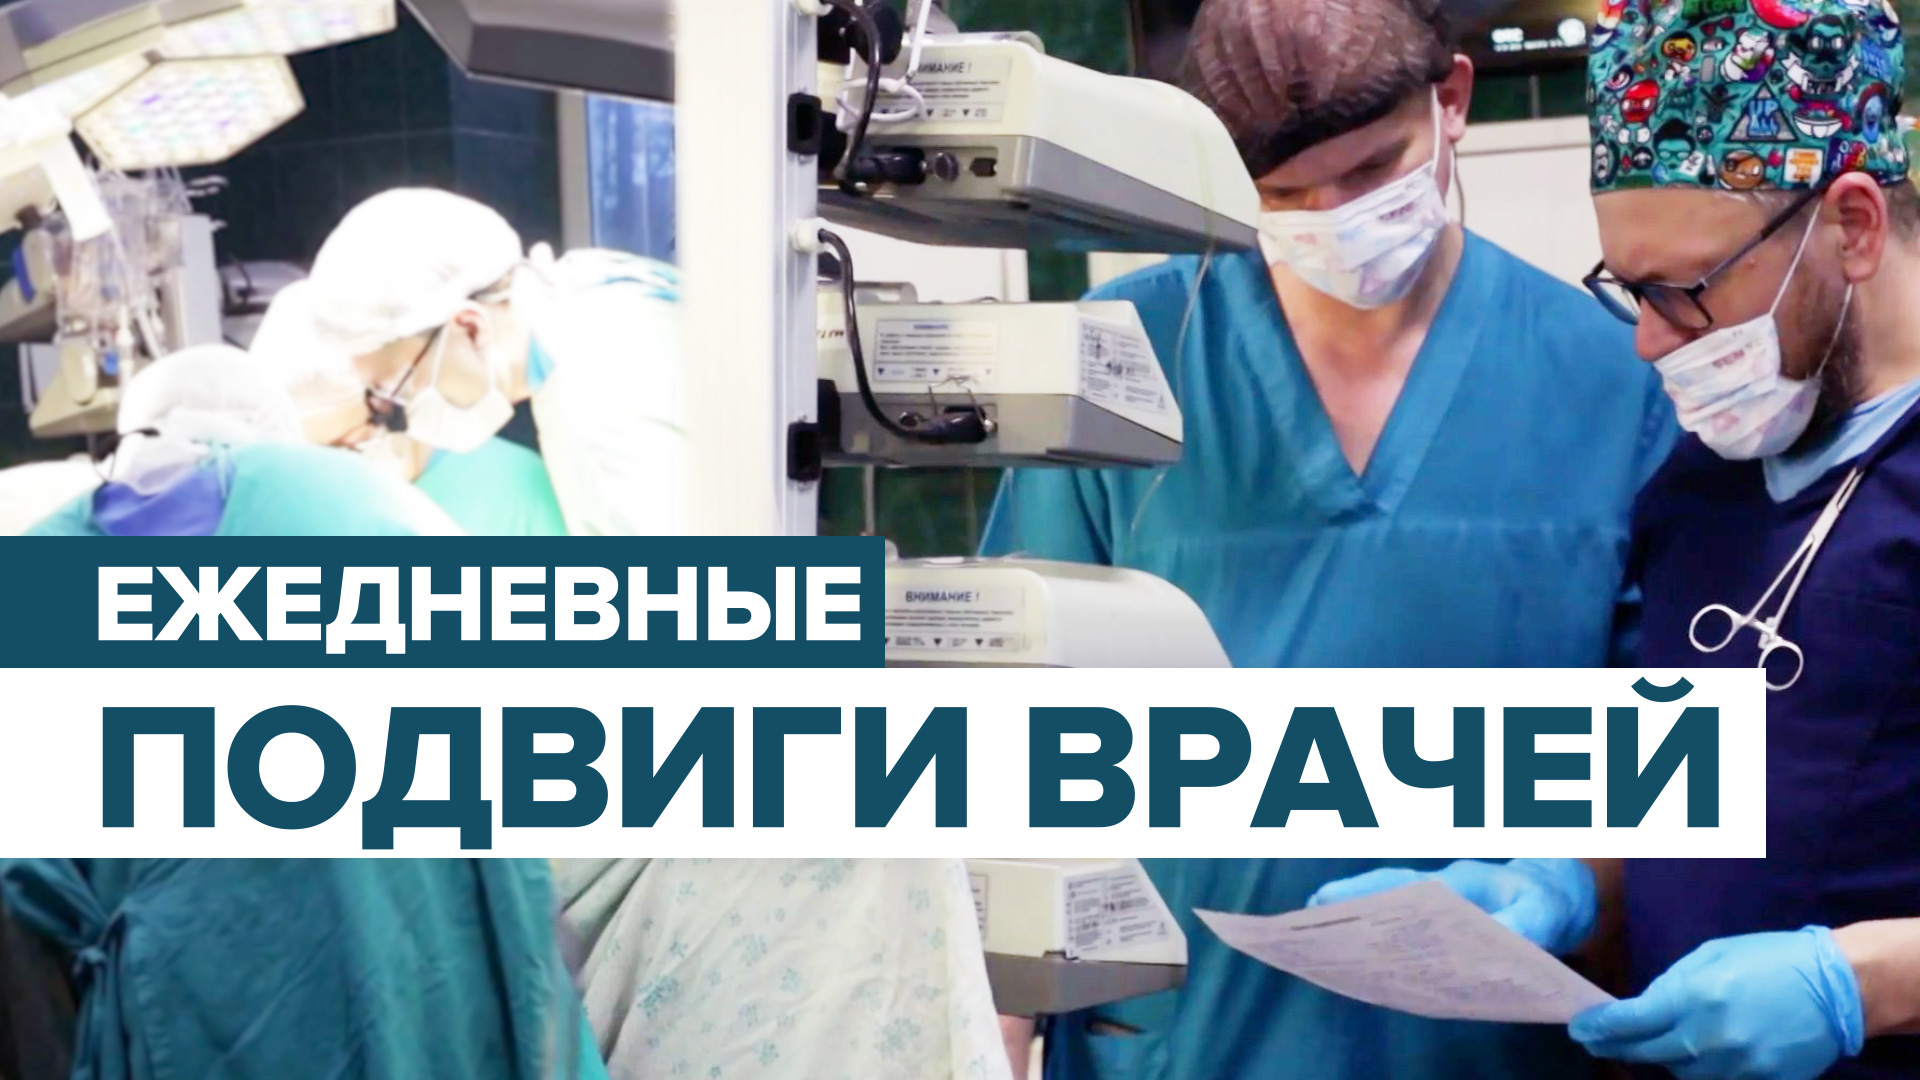 «Поражён самоотверженностью врачей»: медики из Санкт-Петербурга рассказали о своей работе в Донецке